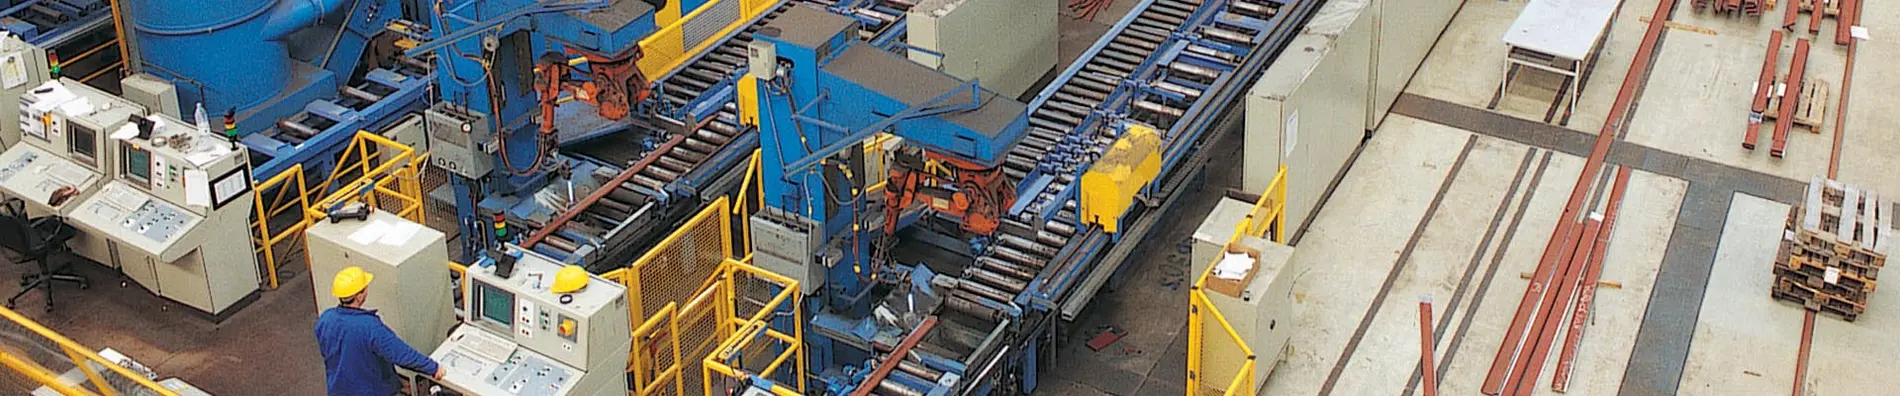 Meyer-Werft Produktion der Steifen